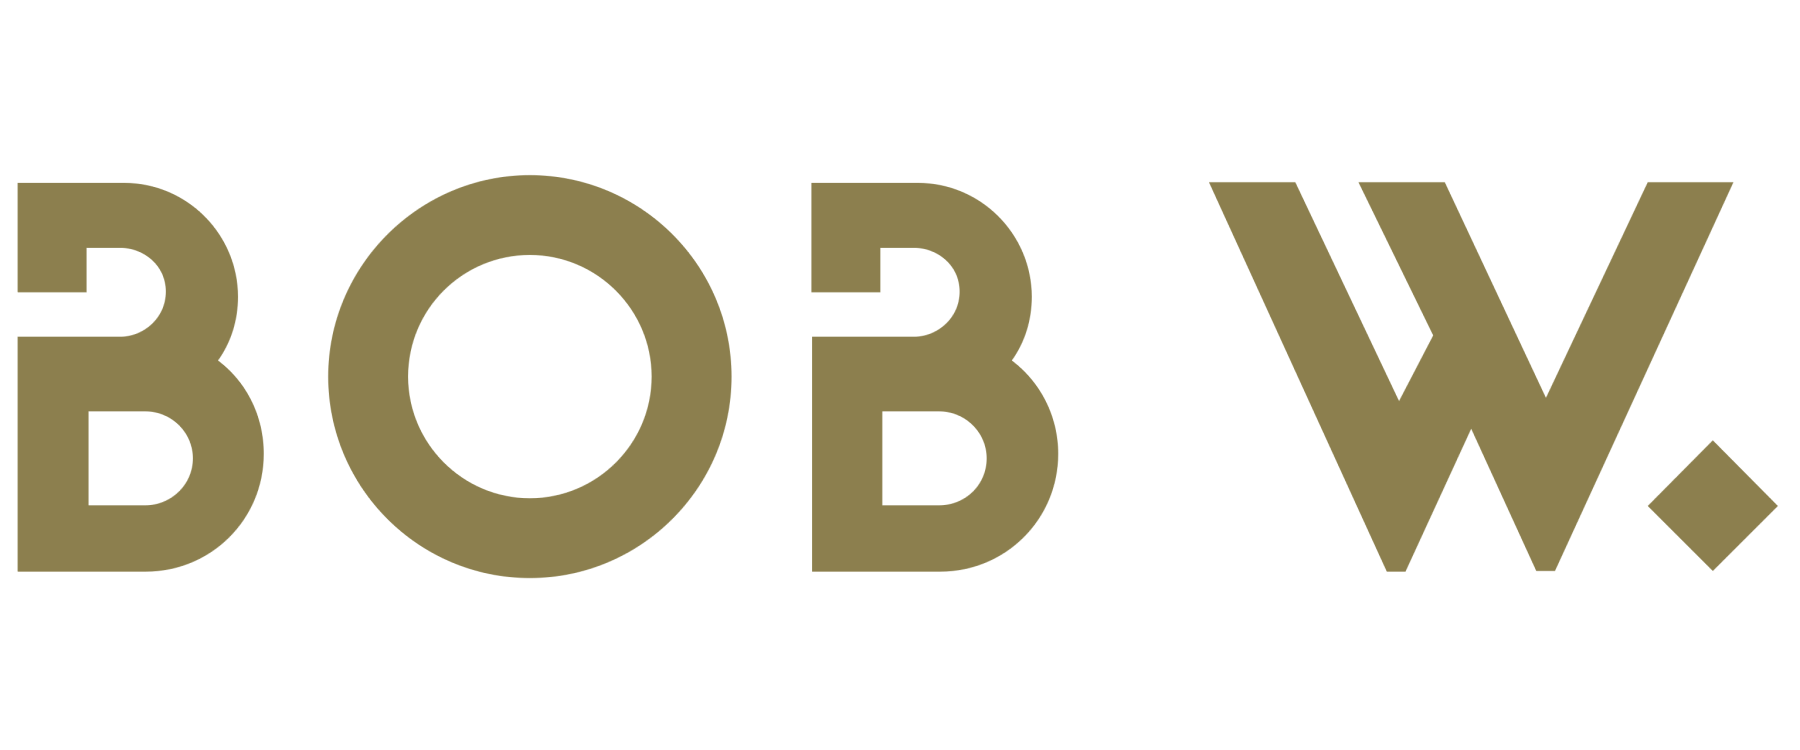 Bob W logo